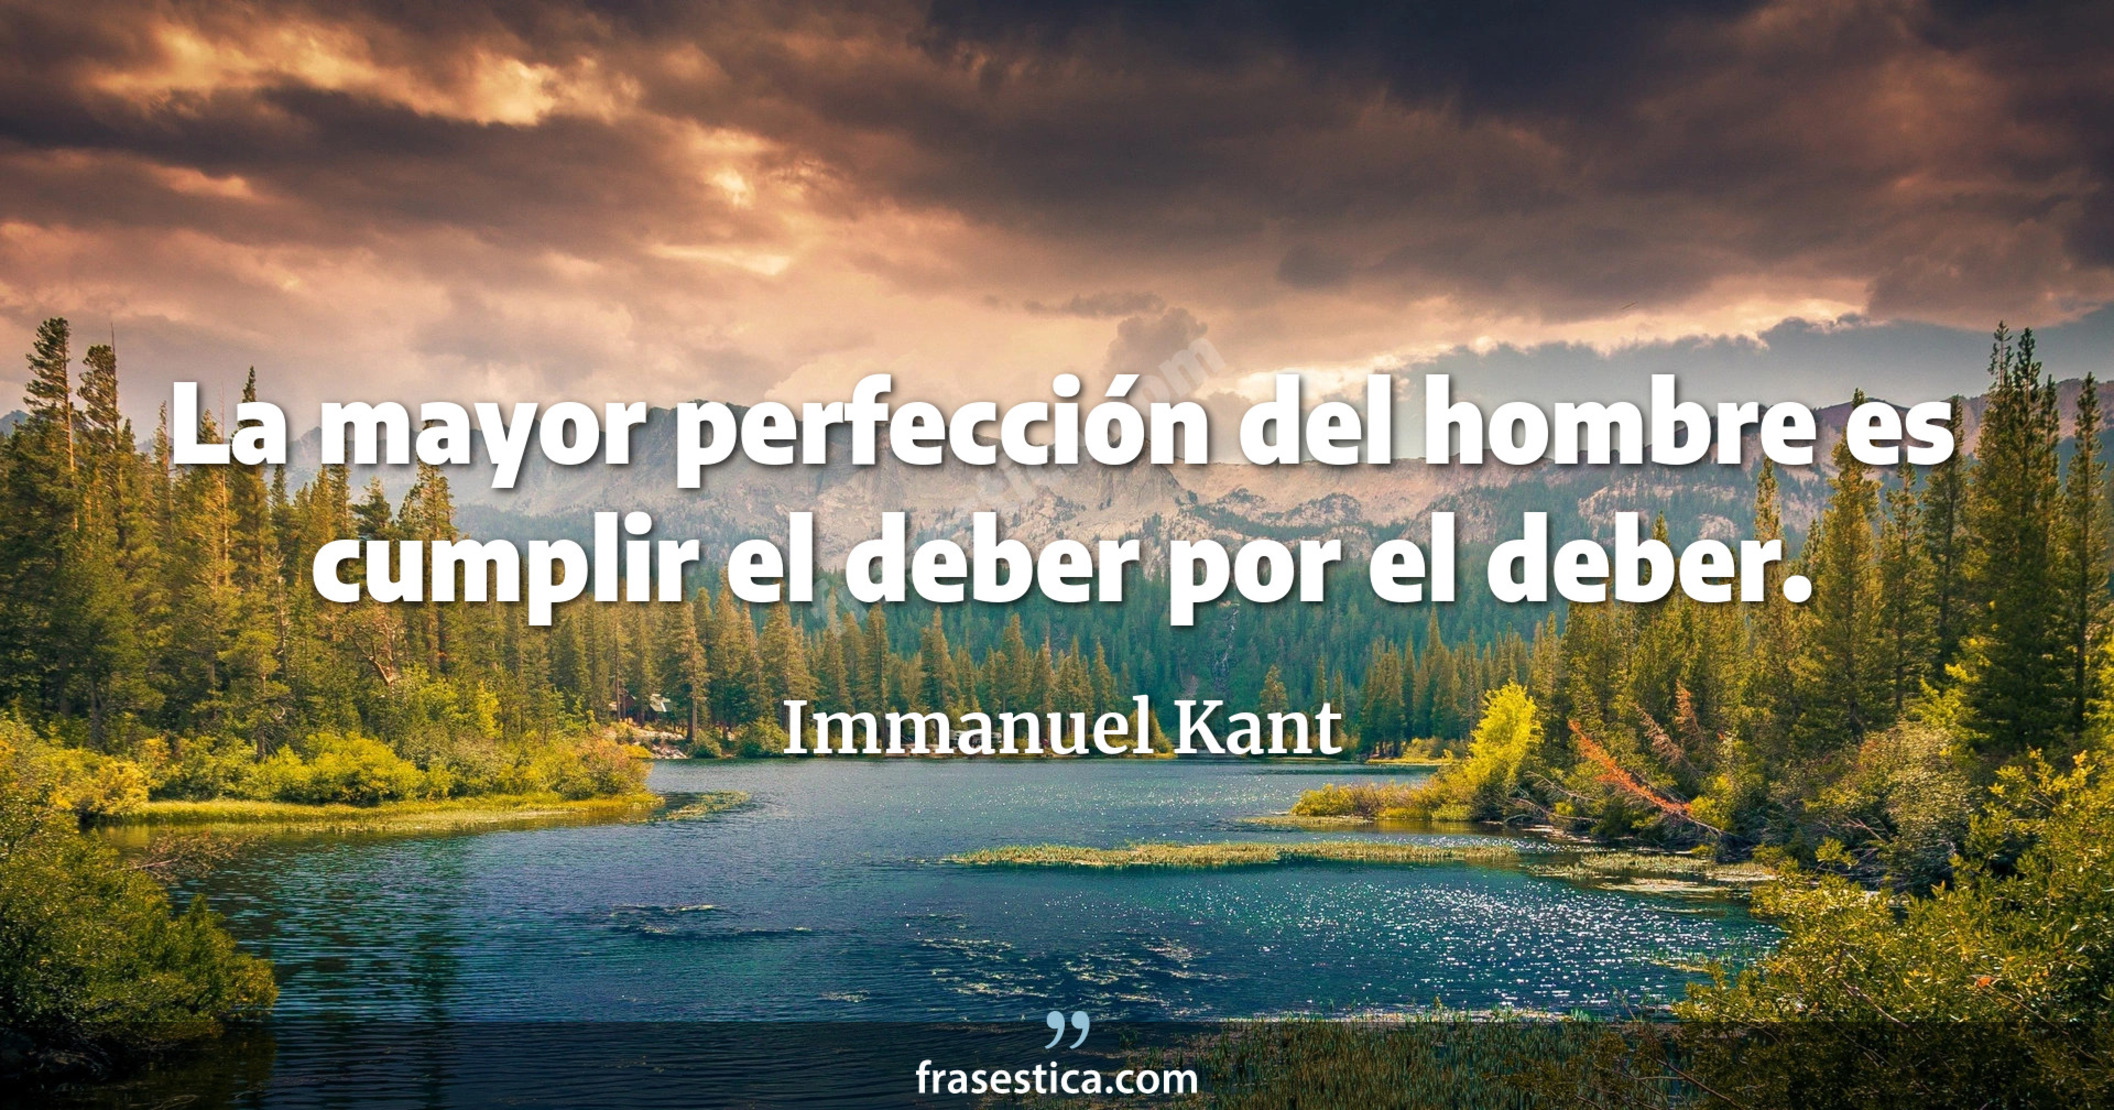 La mayor perfección del hombre es cumplir el deber por el deber. - Immanuel Kant